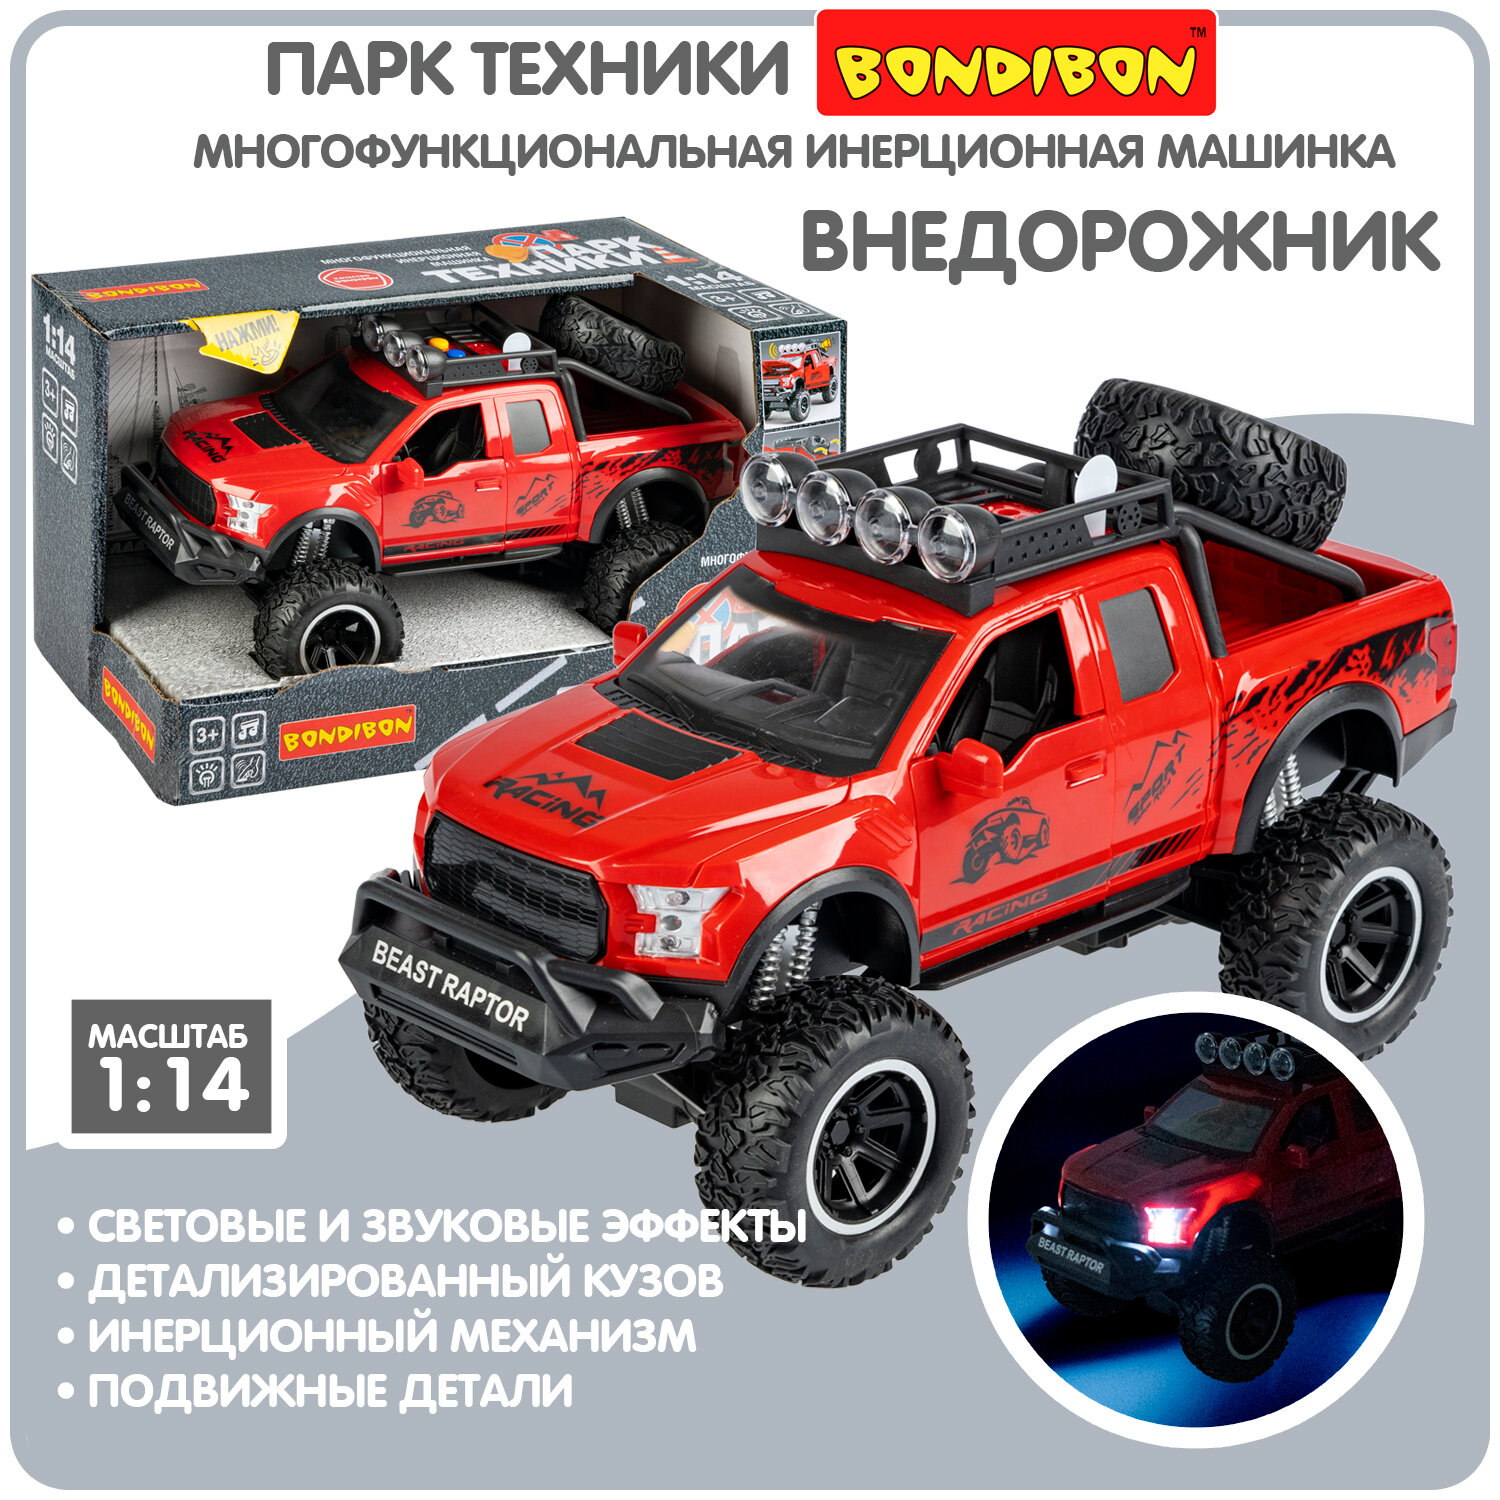 Машинка для мальчиков внедорожник Bondibon "Парк техники" инерционная детская игрушка джип, красный